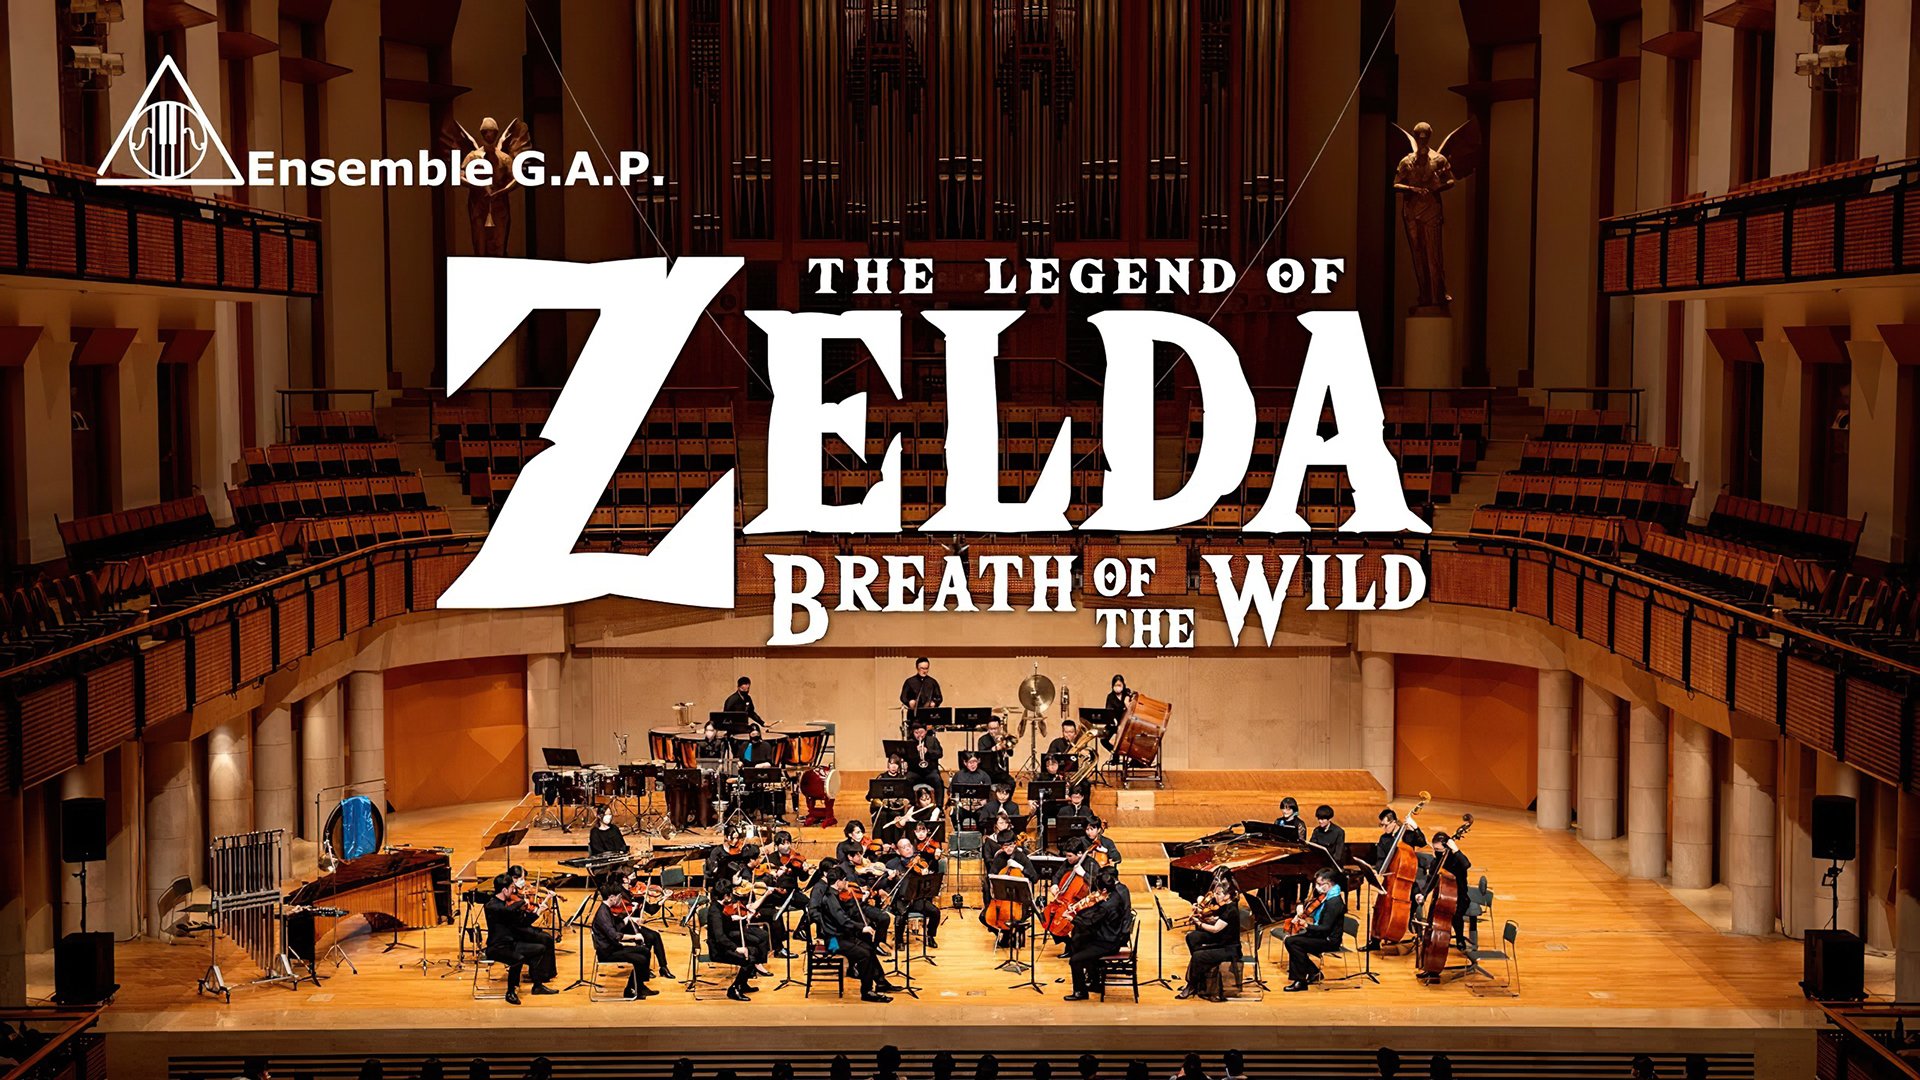 The Legend of Zelda - streaming tv show online